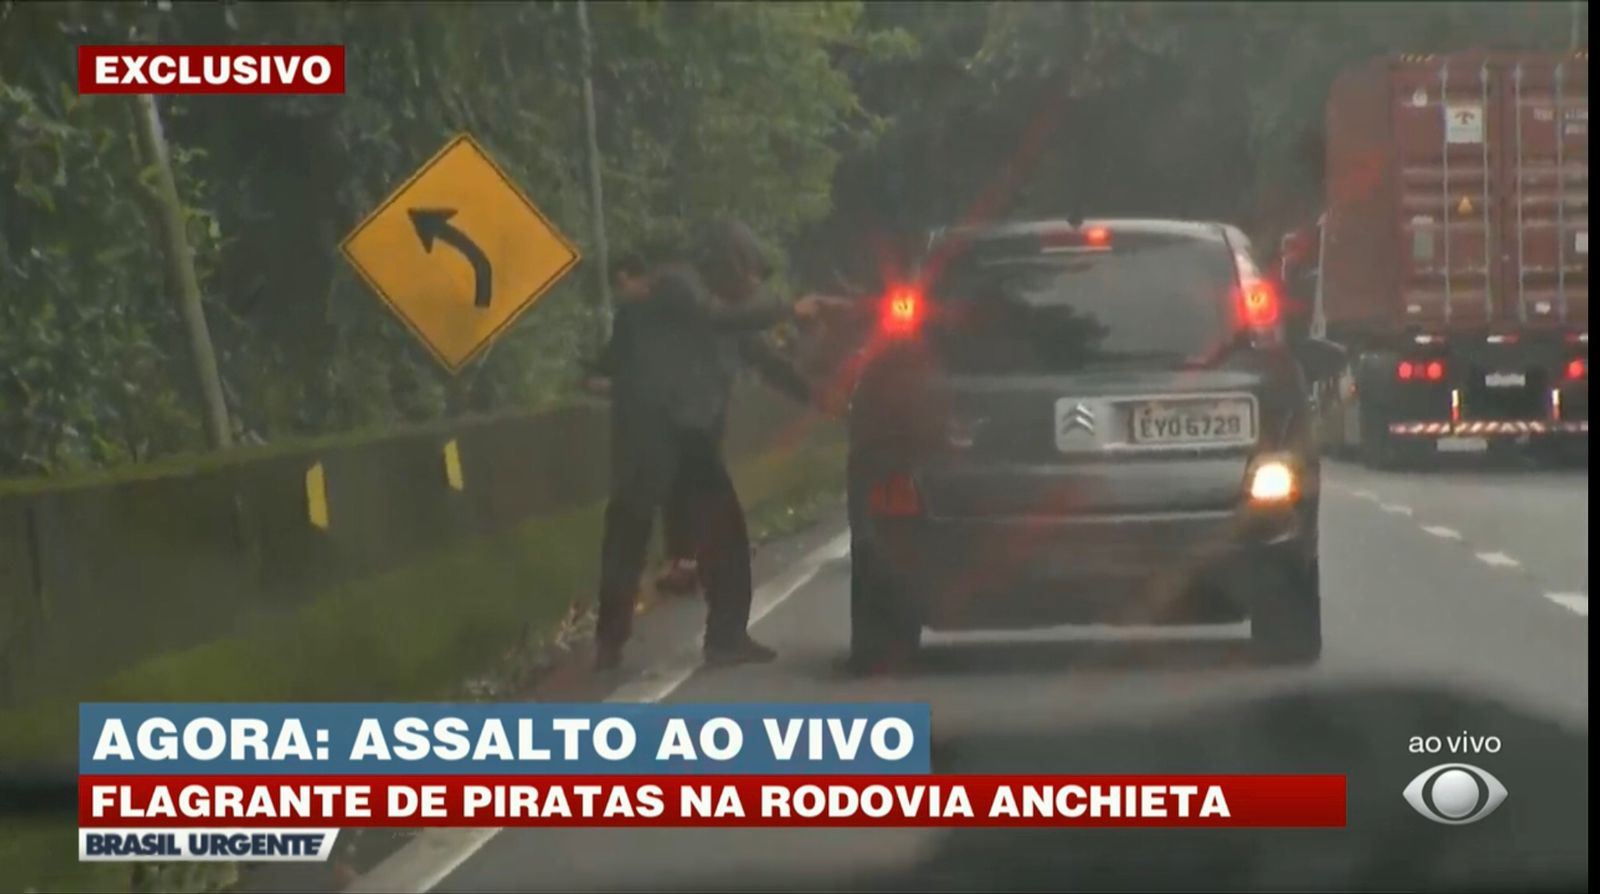 No Brasil Urgente, da Band, Datena flagra assalto ao vivo (Foto: Reprodução)